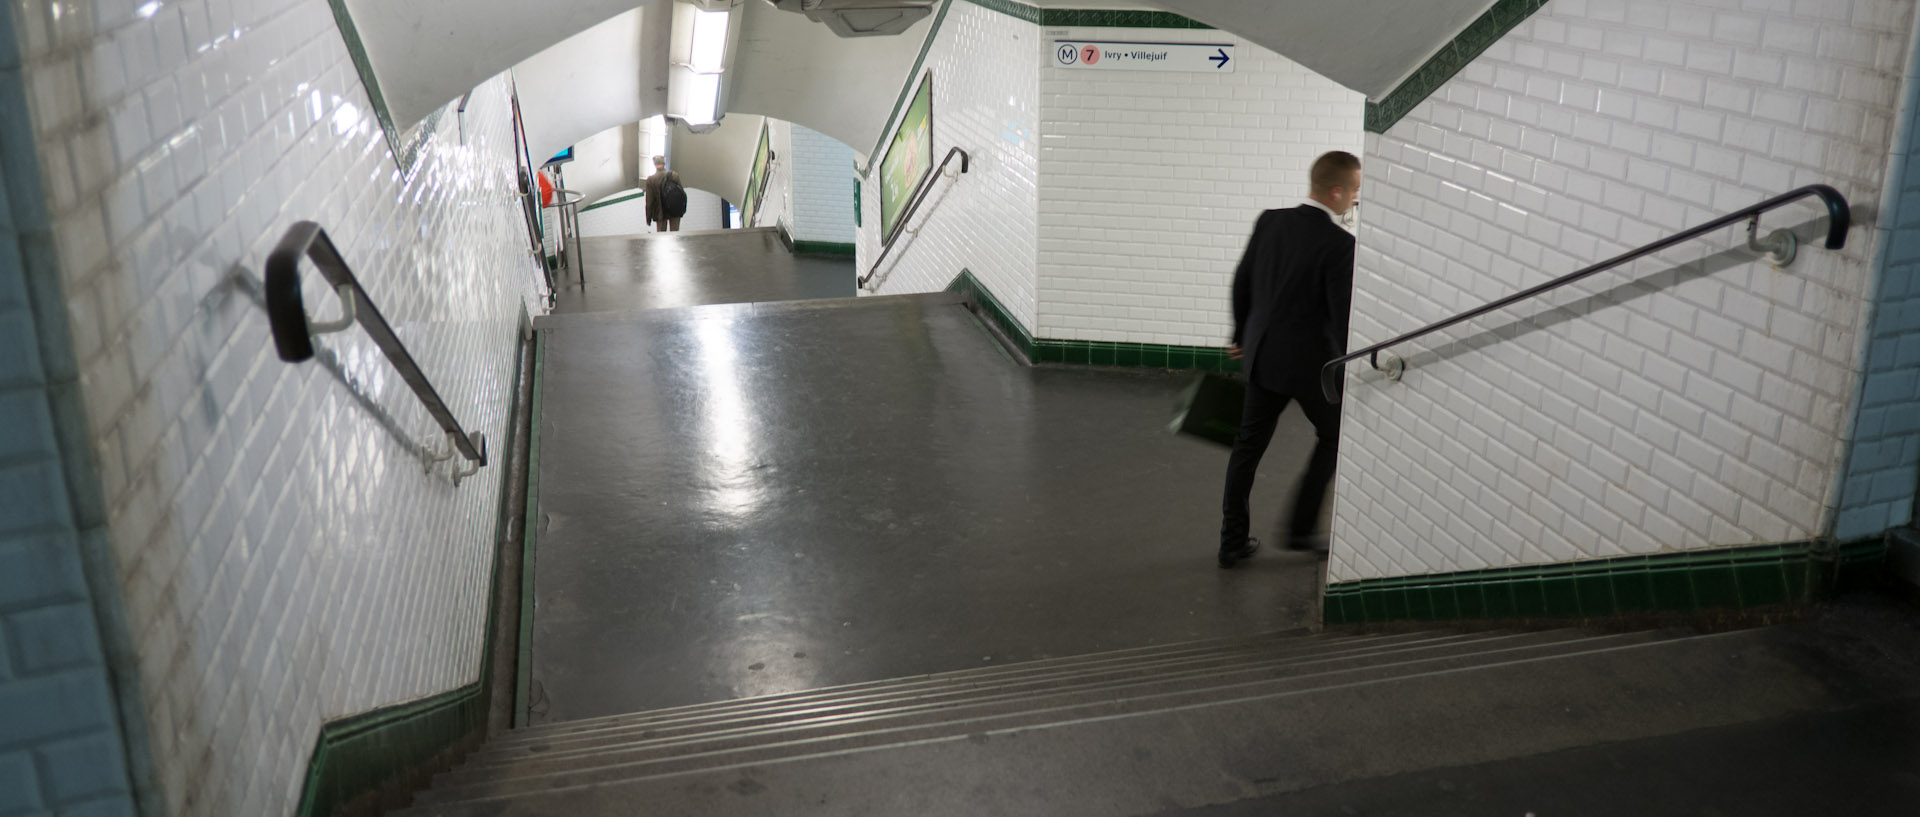 Couloir du métro, station gare de l'Est, à Paris.